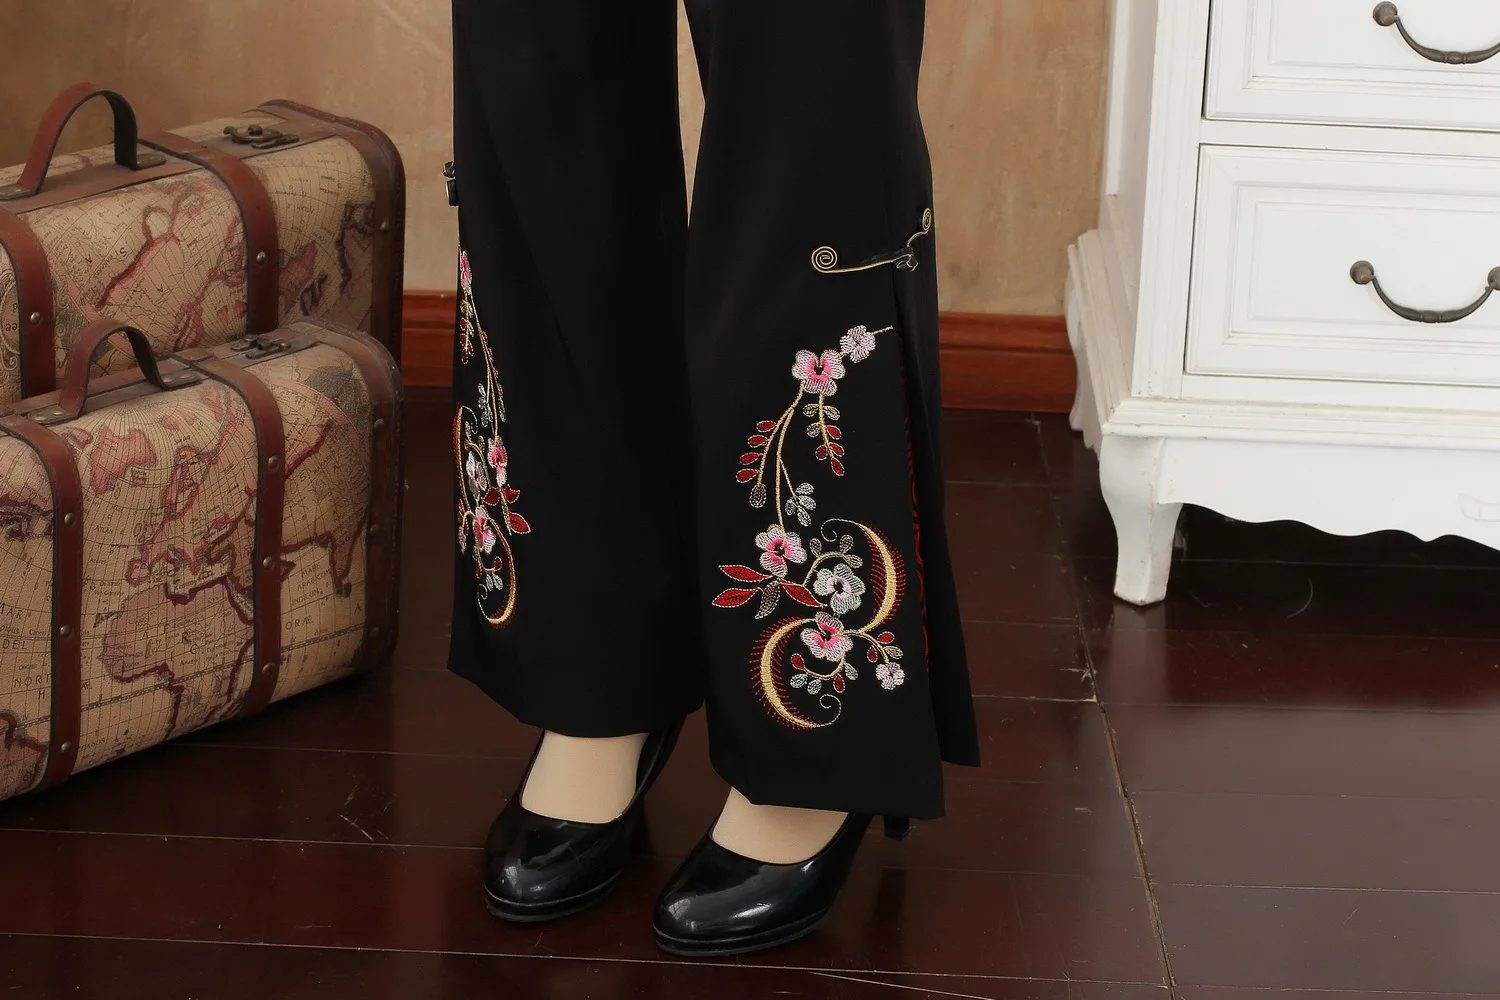 Женские осенние весенние повседневные брюки полной длины с цветочной вышивкой, женские брюки традиционного китайского размера плюс 3XL 4XL, расклешенные брюки